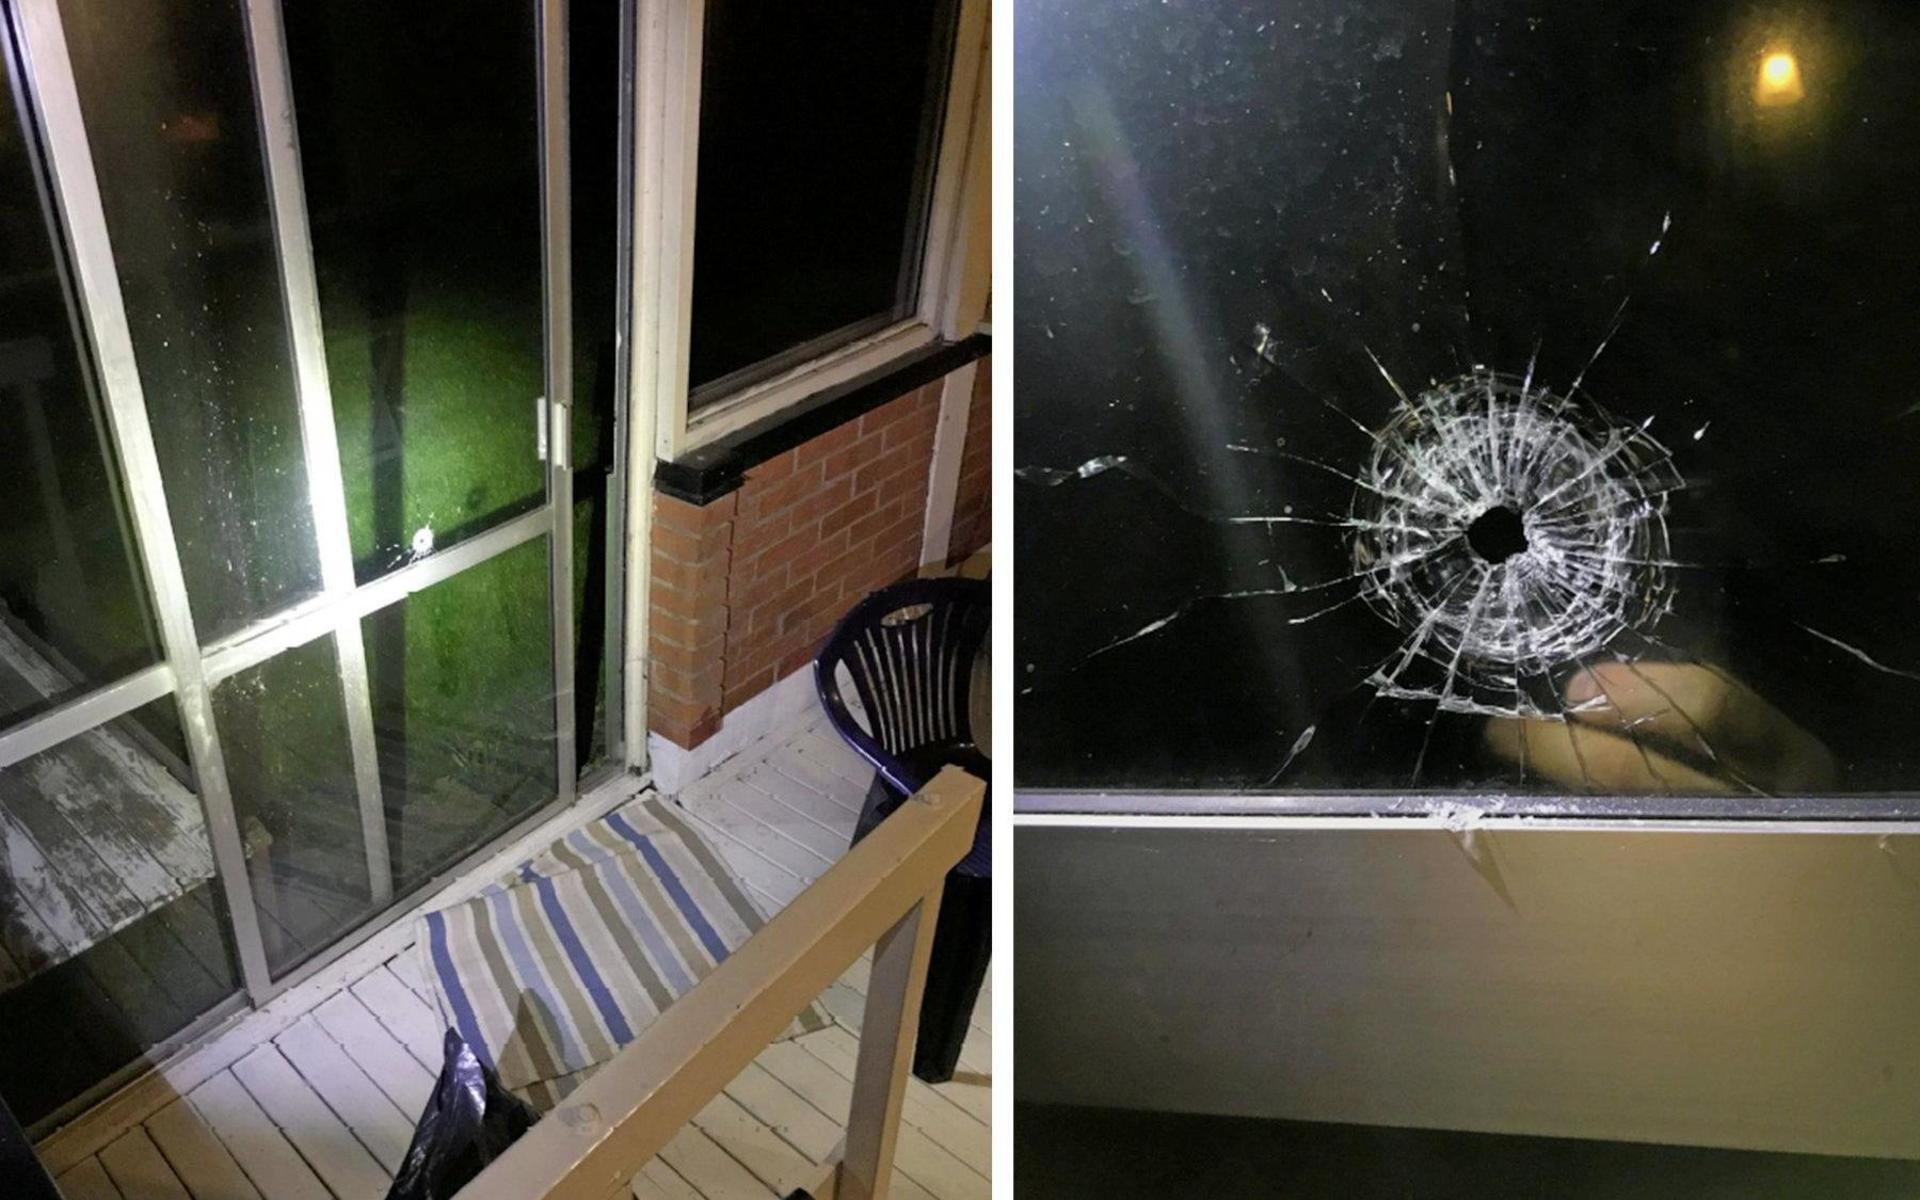 Projektilen perforerade glasrutan i en skjutdörr till altanen. Splitter från glaset träffade offret i ansiktet så att mindre blodvite uppstod. Kulan fortsatte in i ett fönster till bostadshuset. 